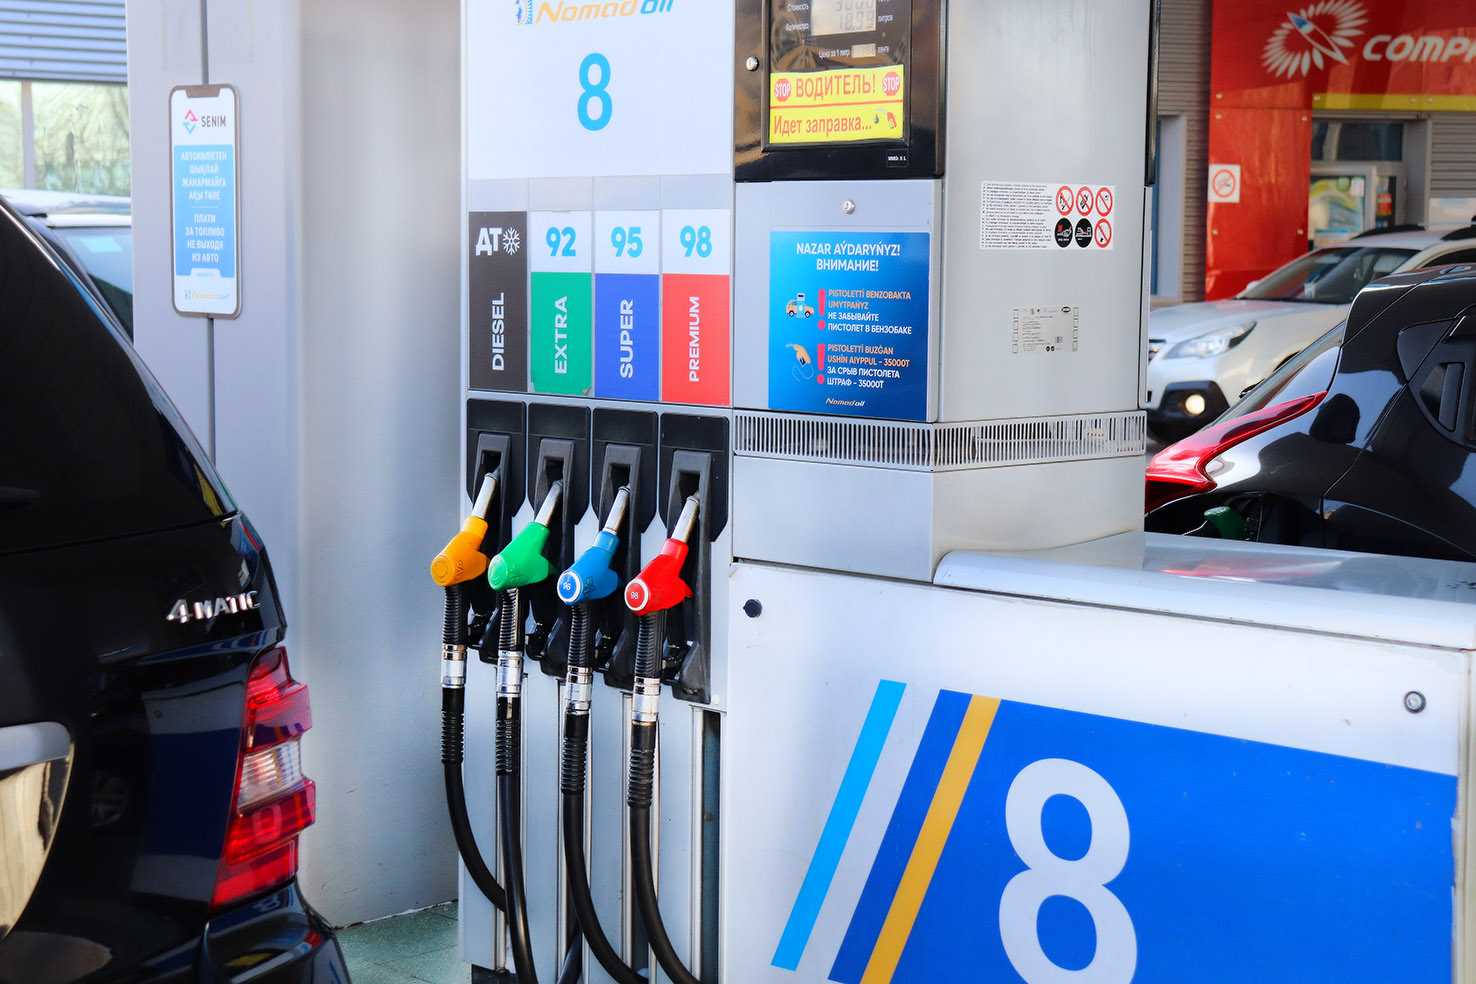 Какой бензин лучше заливать в лада гранта: 92 или 95?